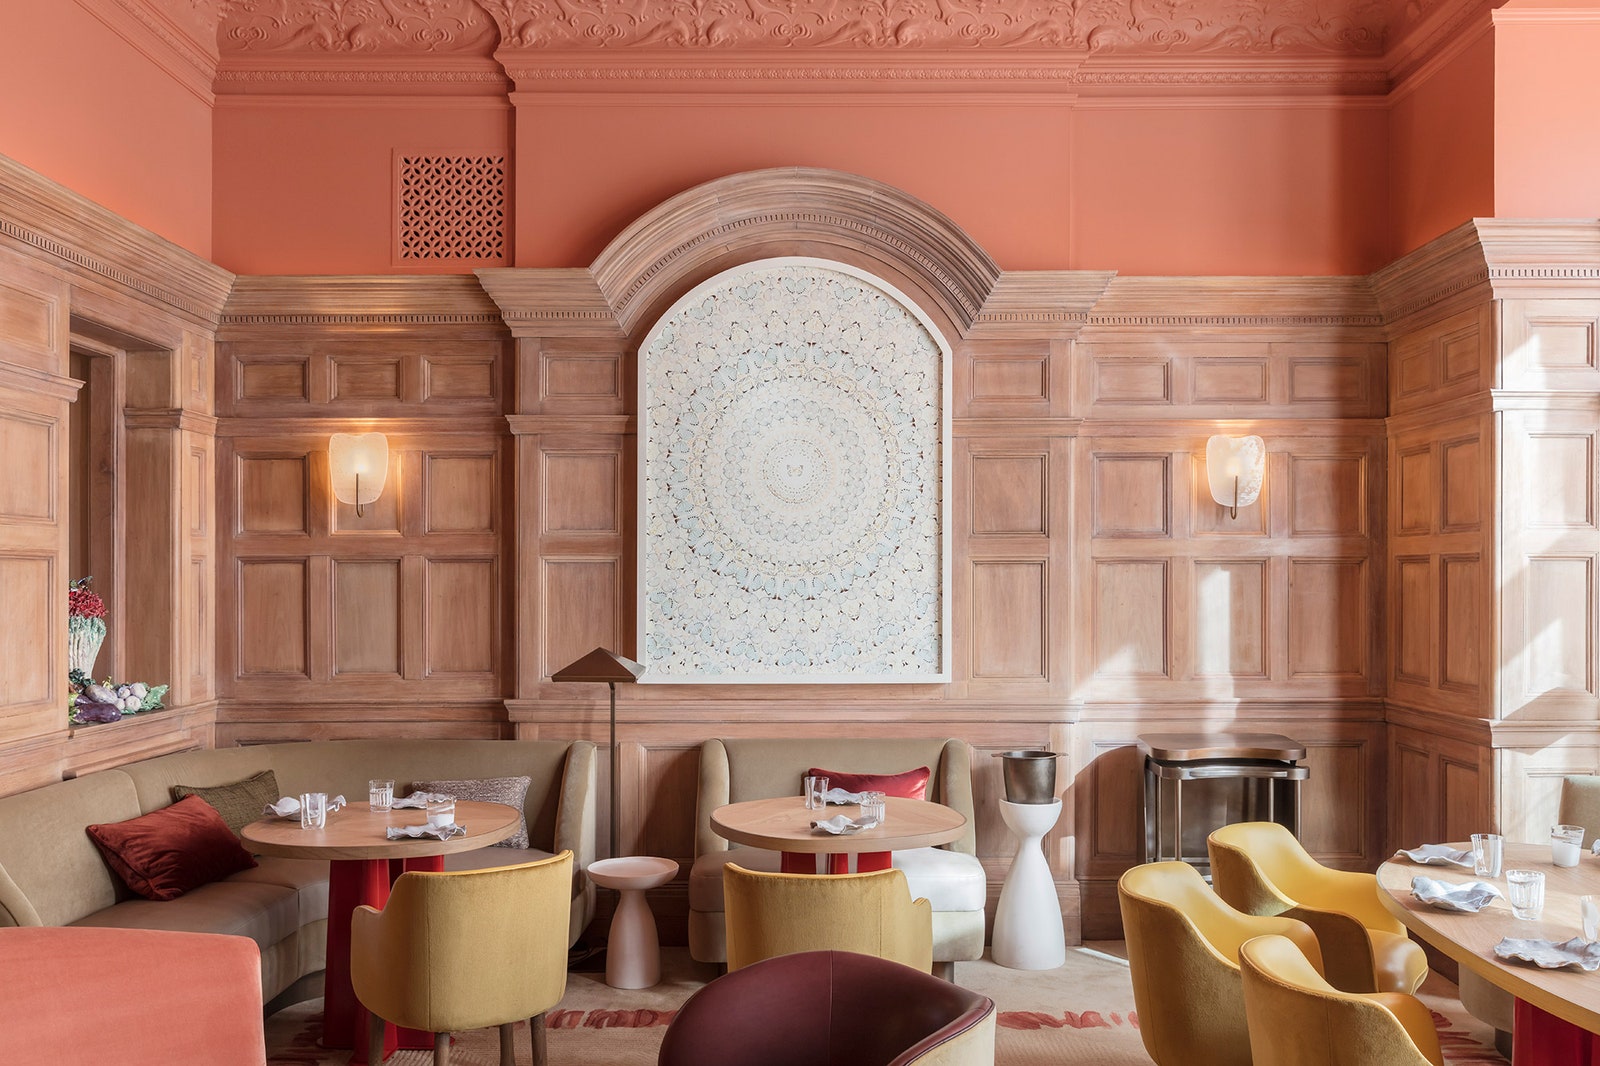 Обновленный ресторан Hlène Darroze по проекту Пьера Йовановича в Лондоне